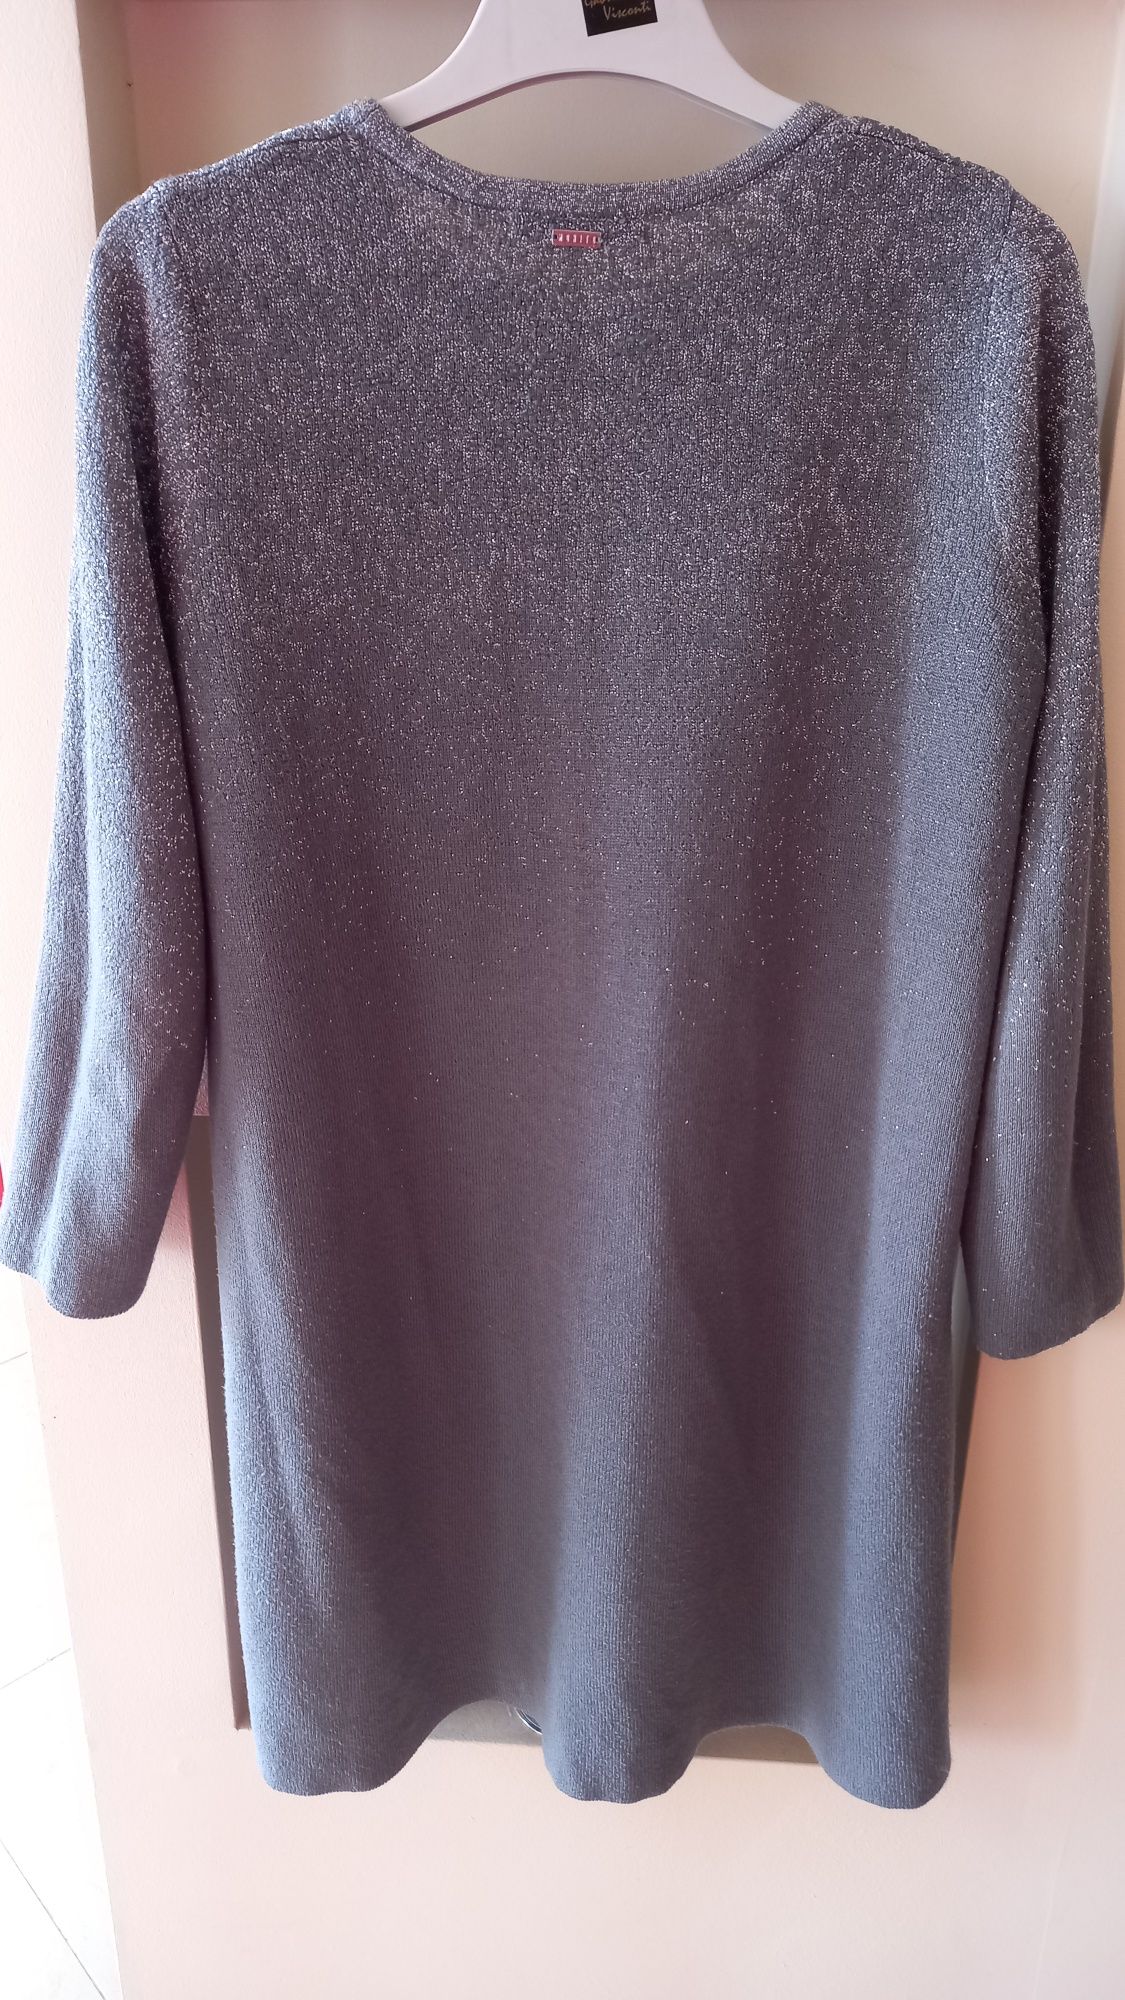 Tunika sukienka sweter szary srebrny cieniowana MOHITO 38-42